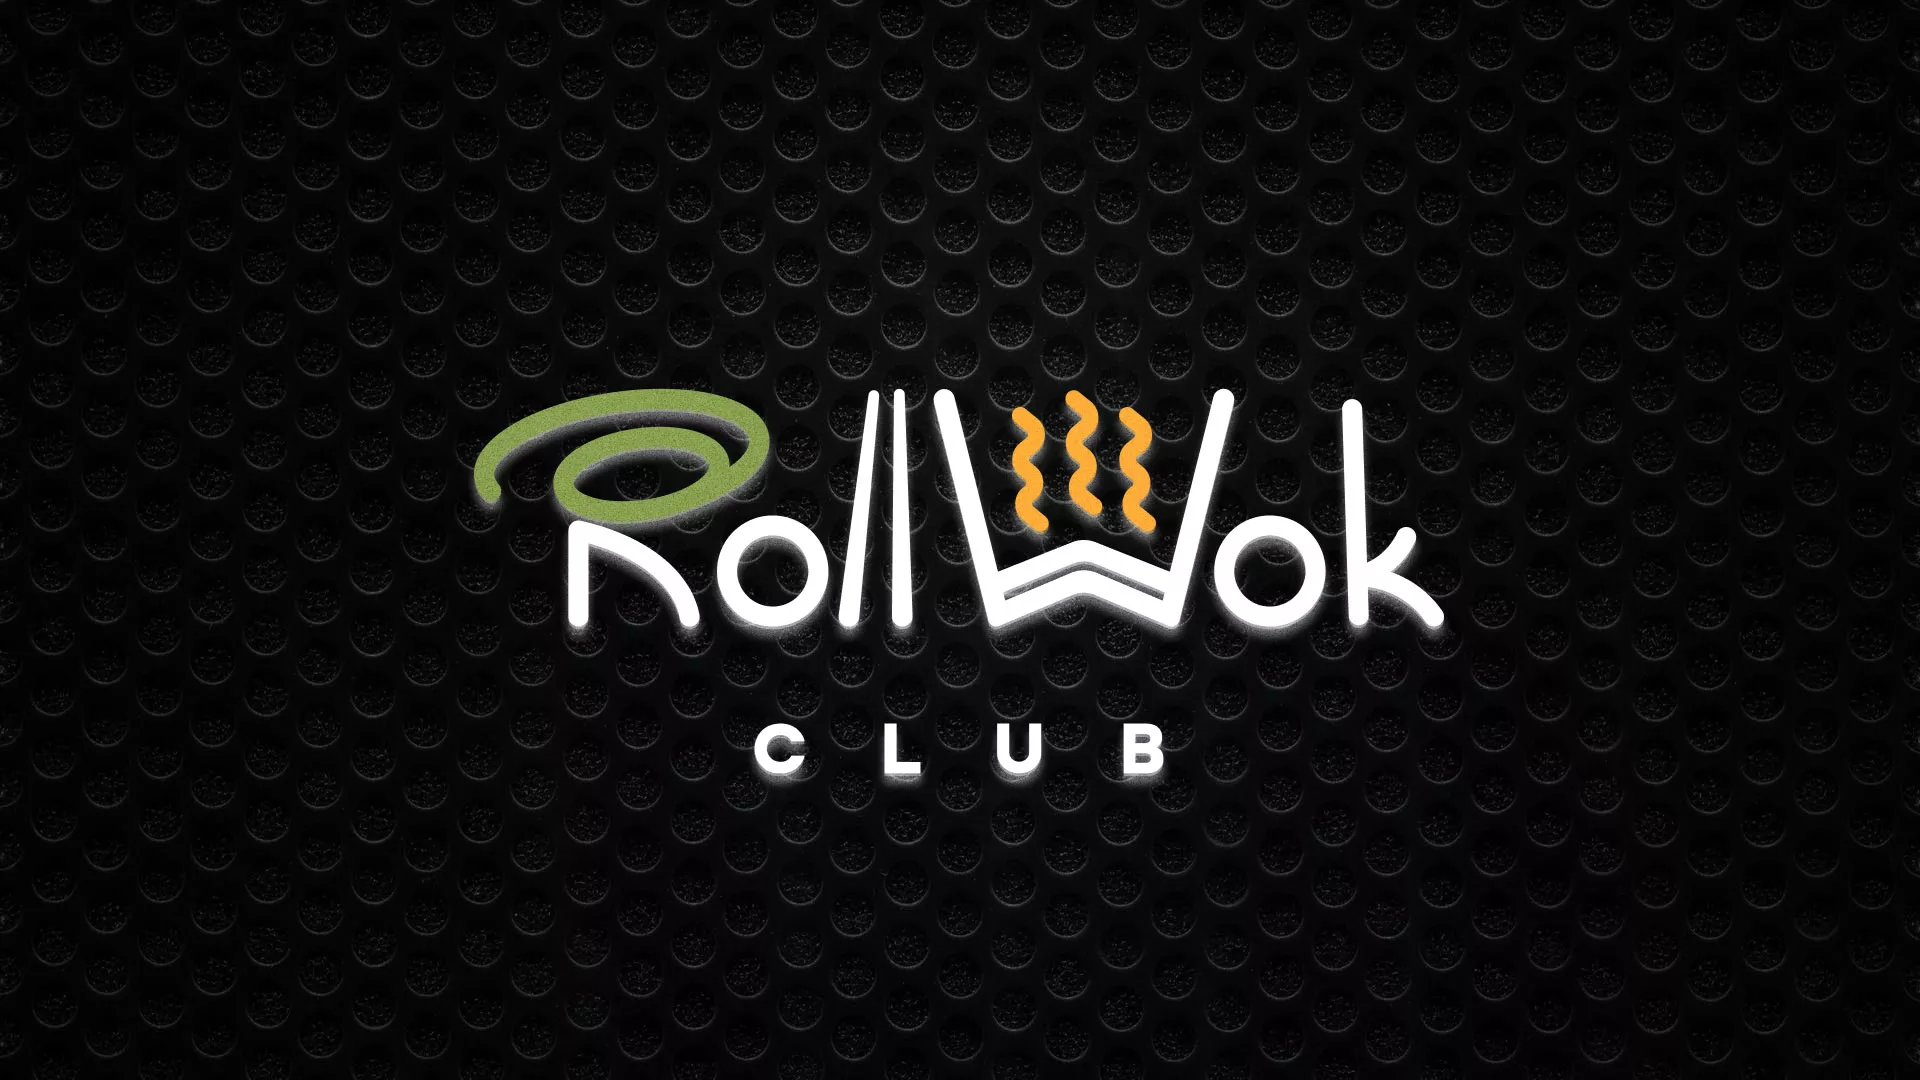 Брендирование торговых точек суши-бара «Roll Wok Club» в Подольске